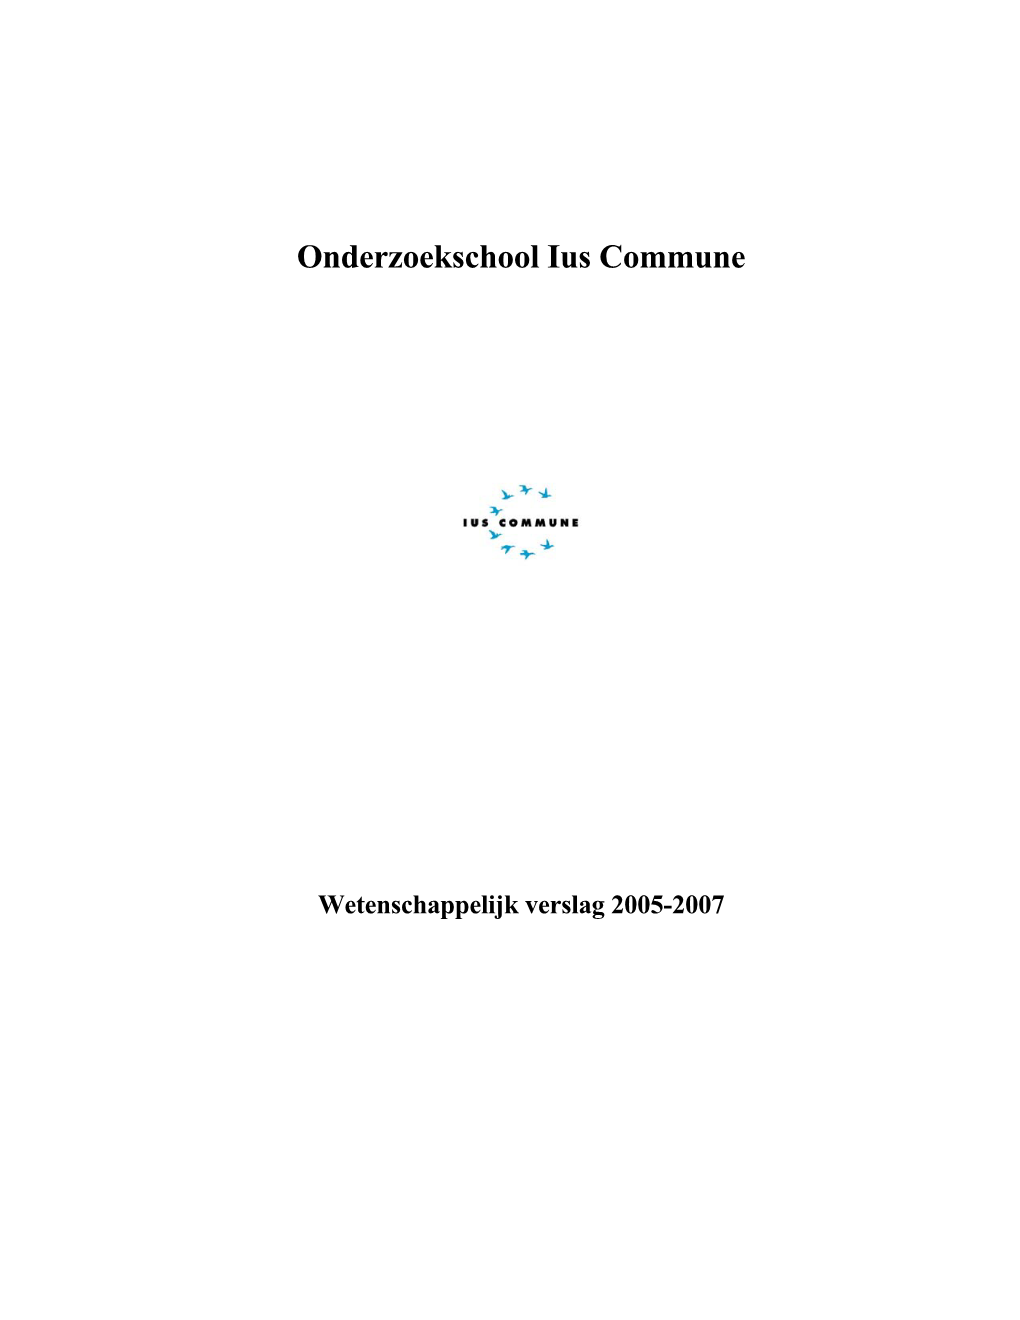 Wetenschappelijk Verslag 2005-2007